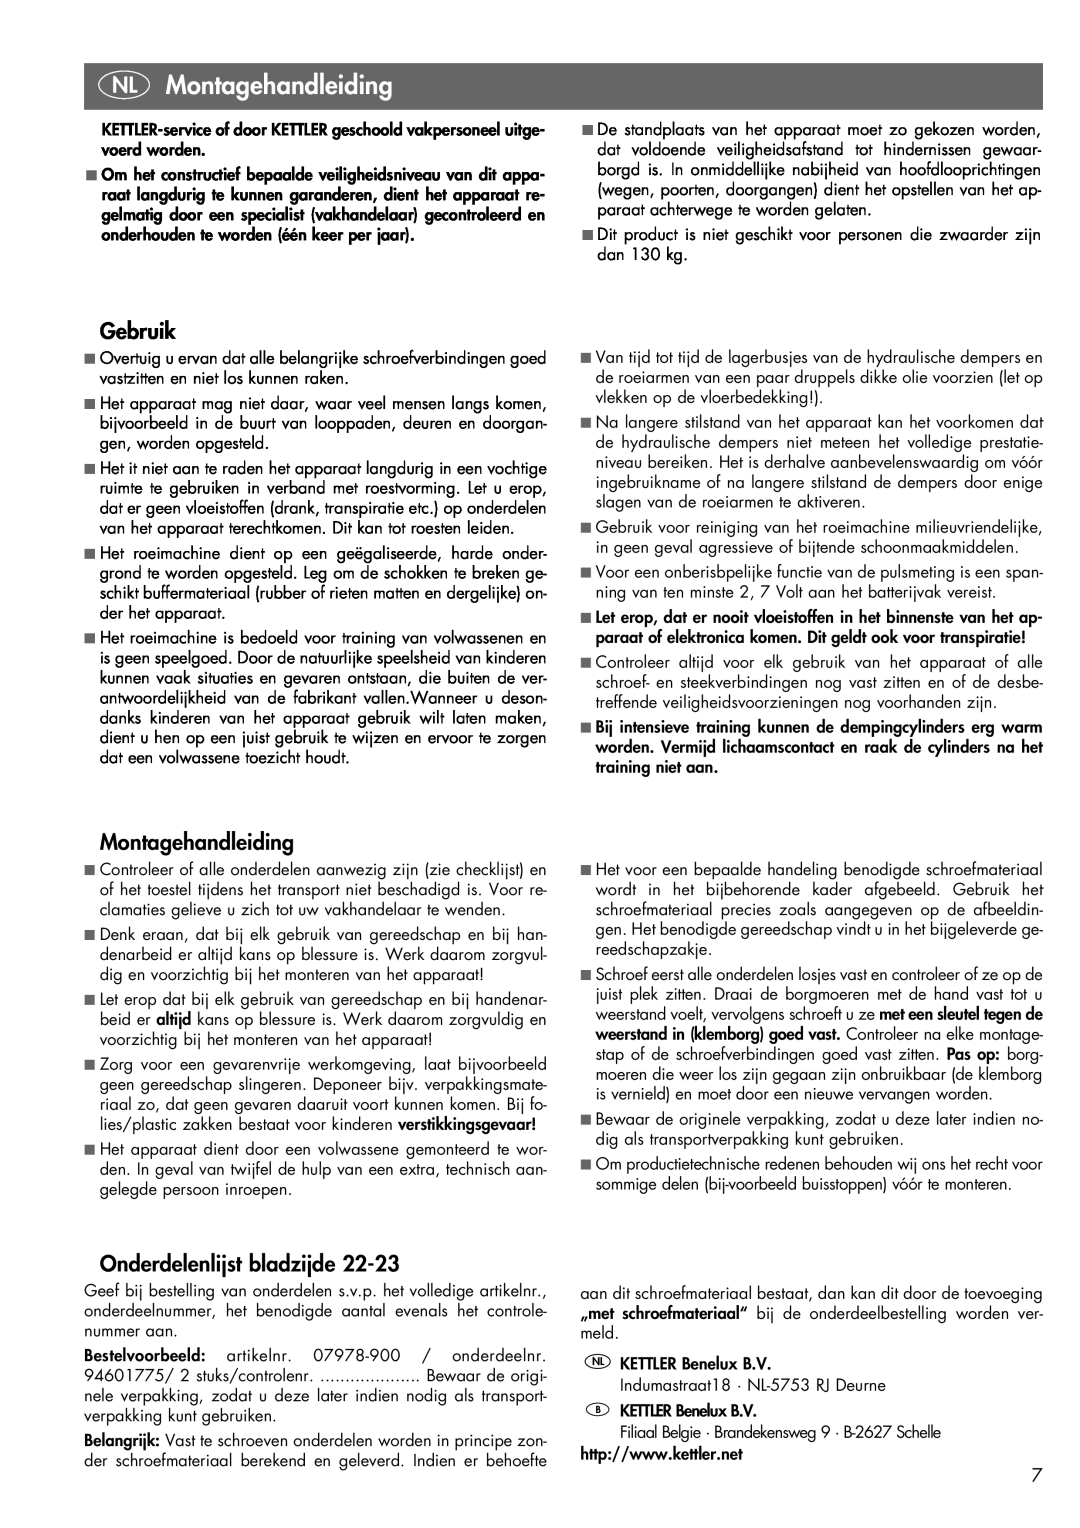 Kettler 07978-900 manual NL Montagehandleiding, Gebruik, Onderdelenlijst bladzijde 